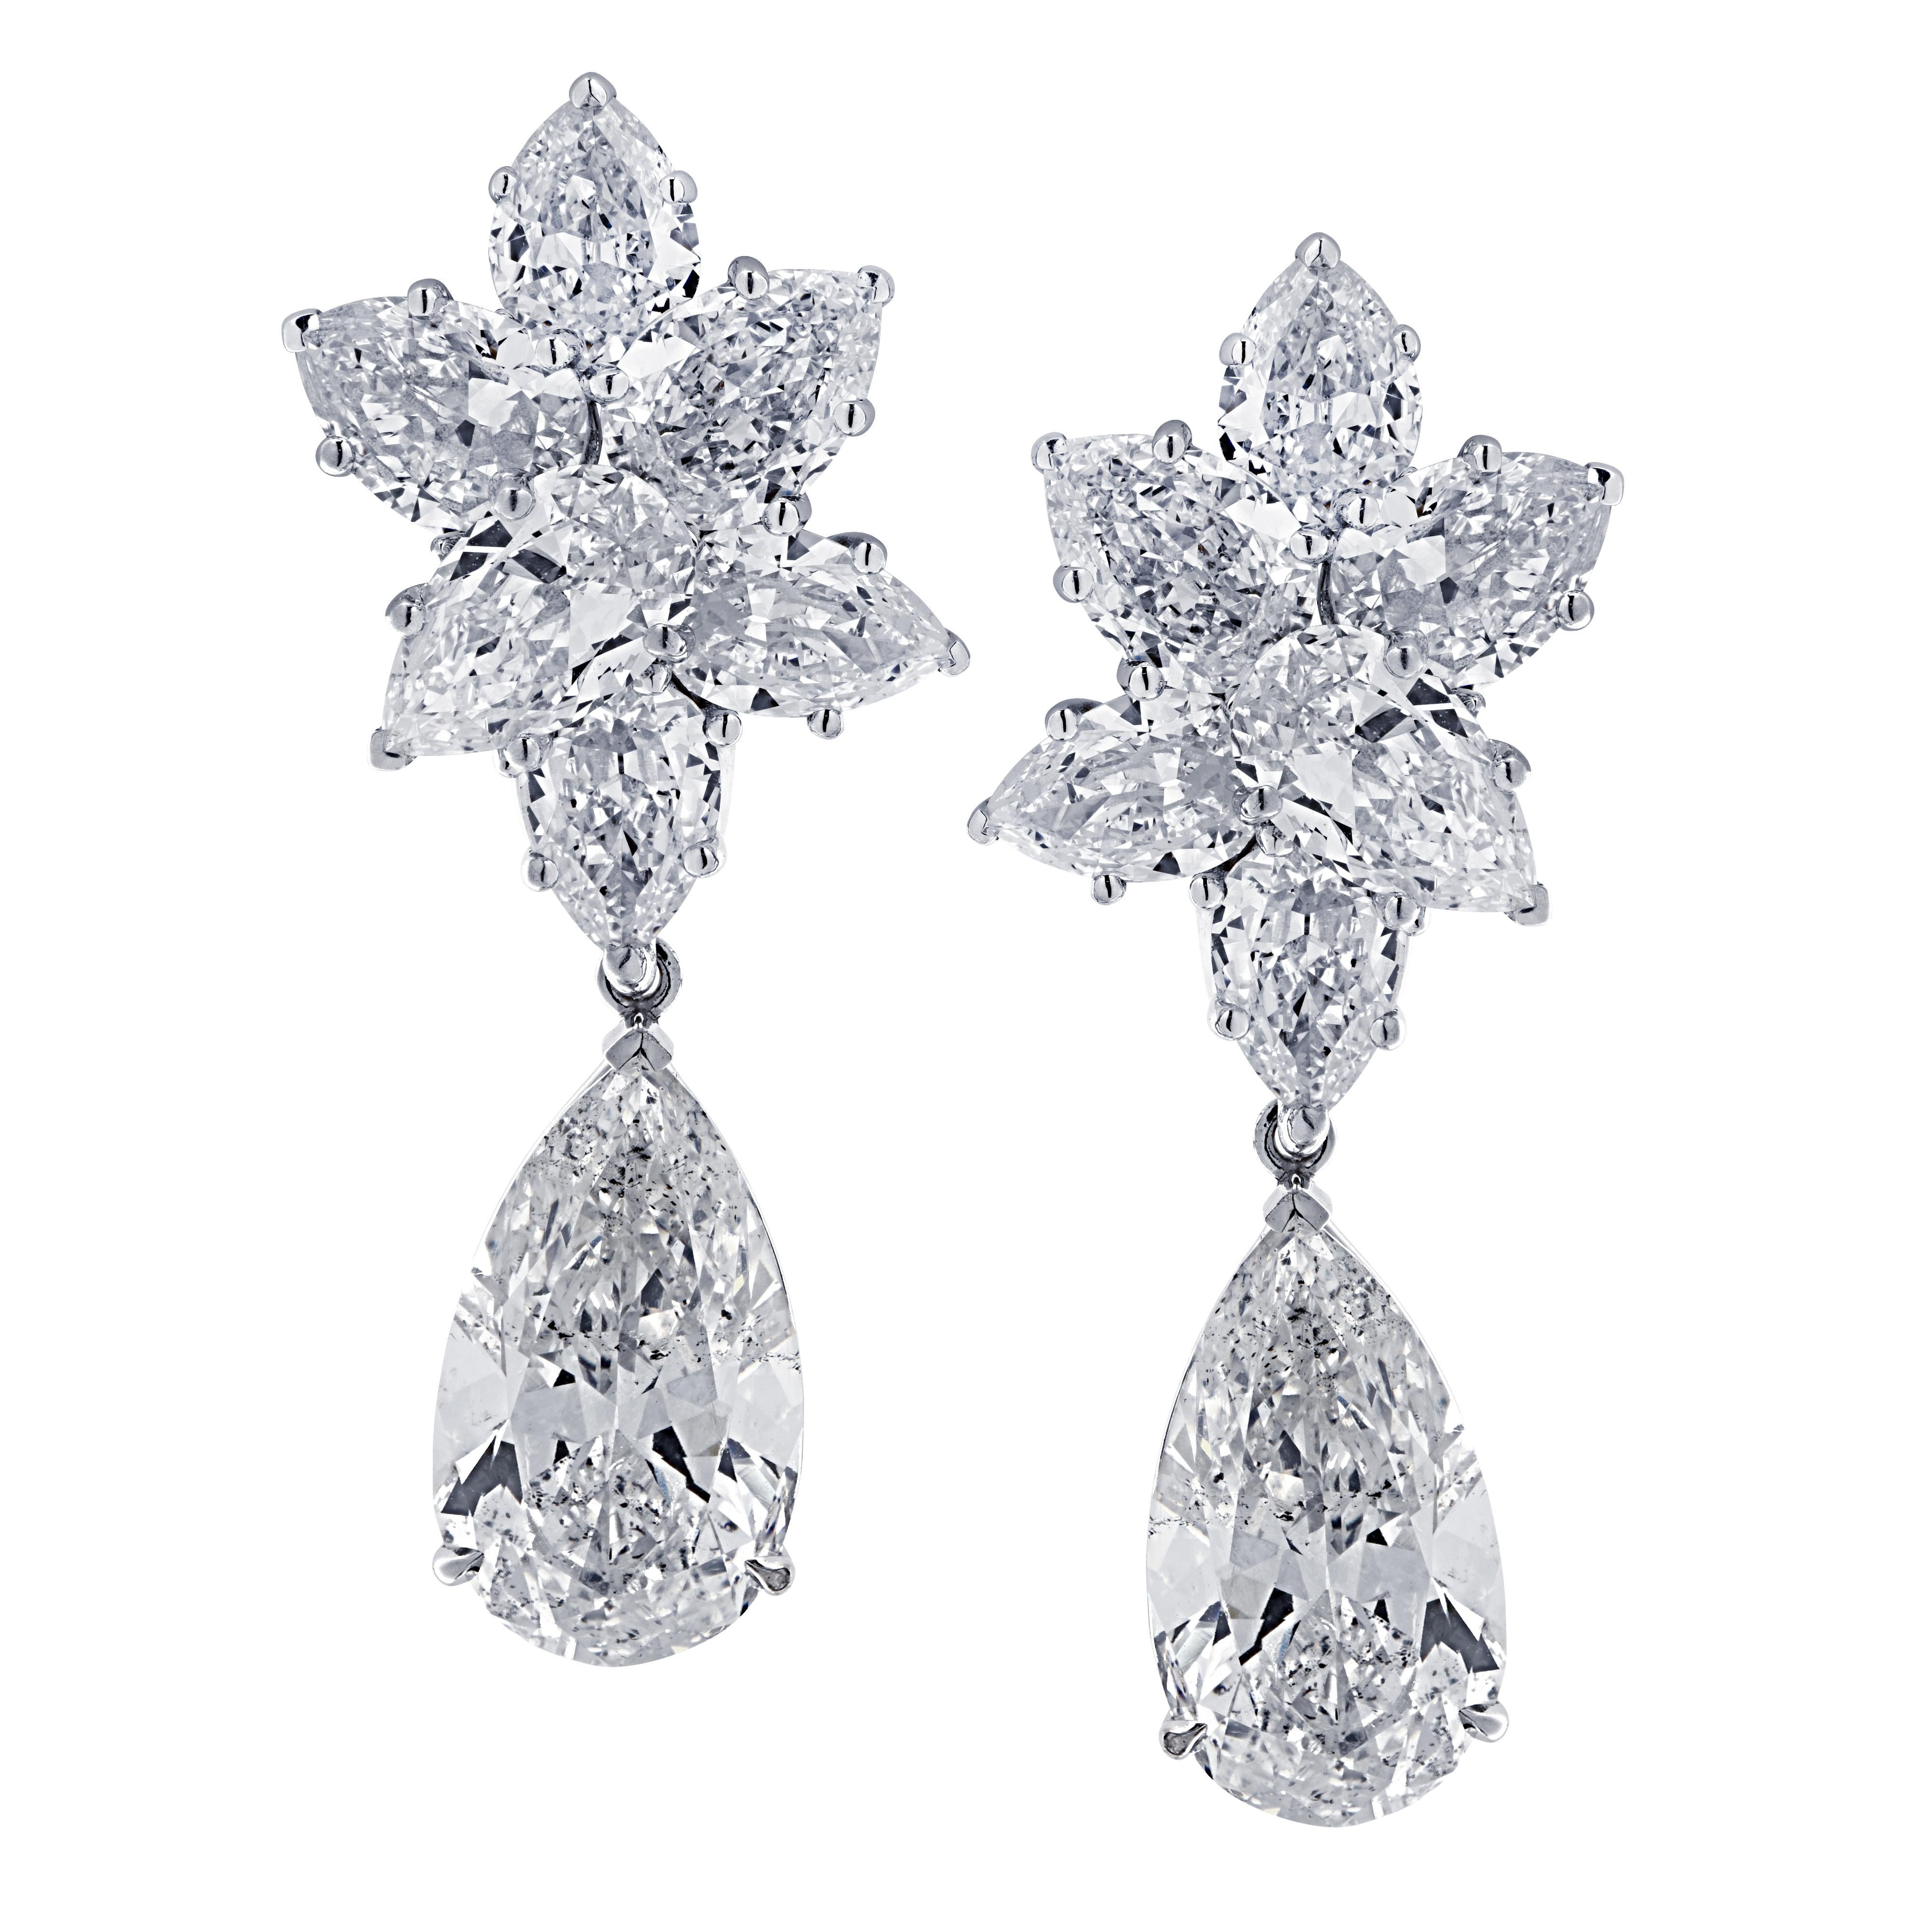 Vivid Diamonds 10.46 Carat Diamond Day and Night Earrings